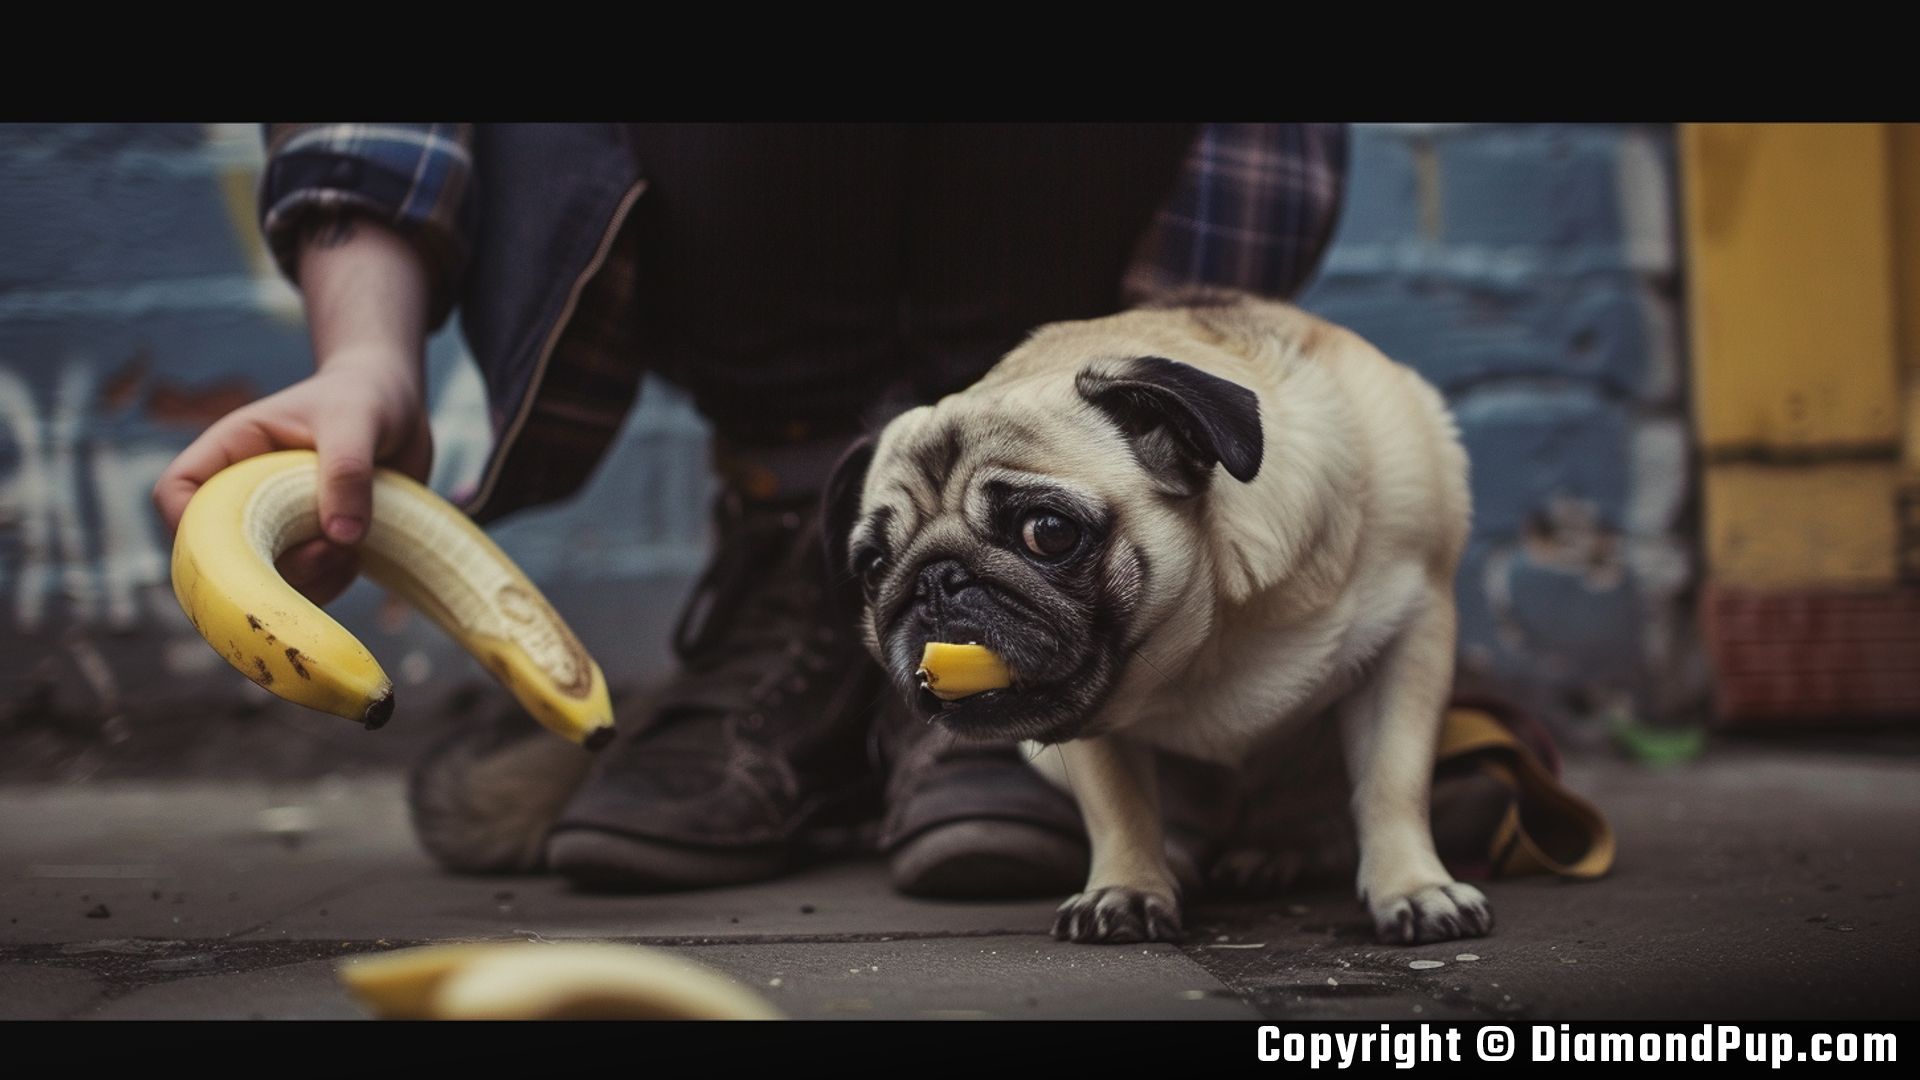 Photo of a Playful Pug Snacking on Banana